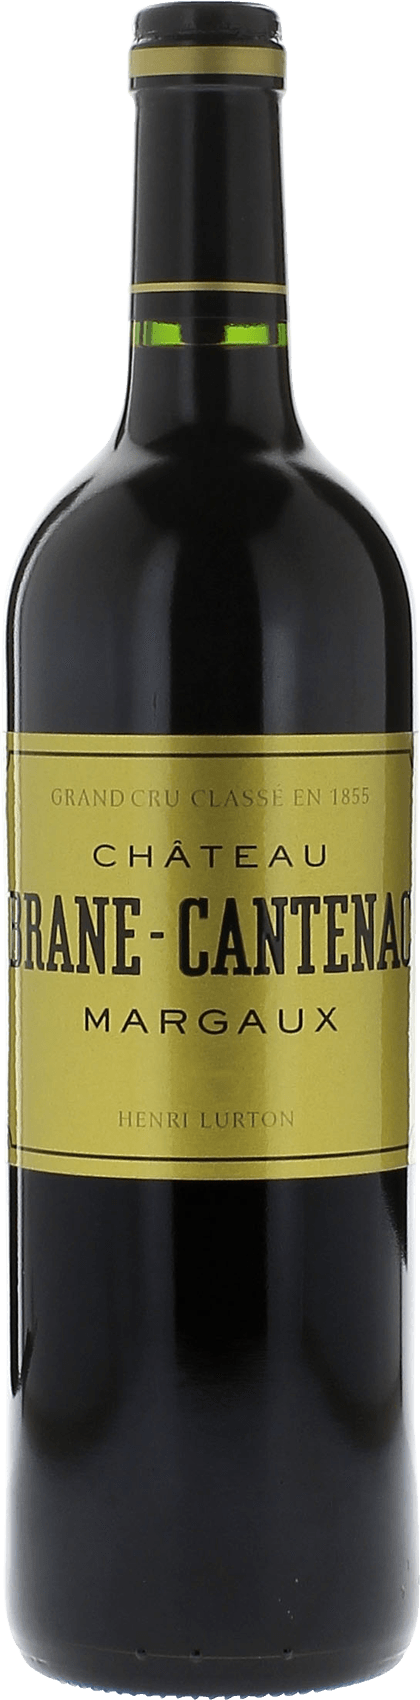 Brane cantenac 1990 2me Grand cru class Margaux, Bordeaux rouge